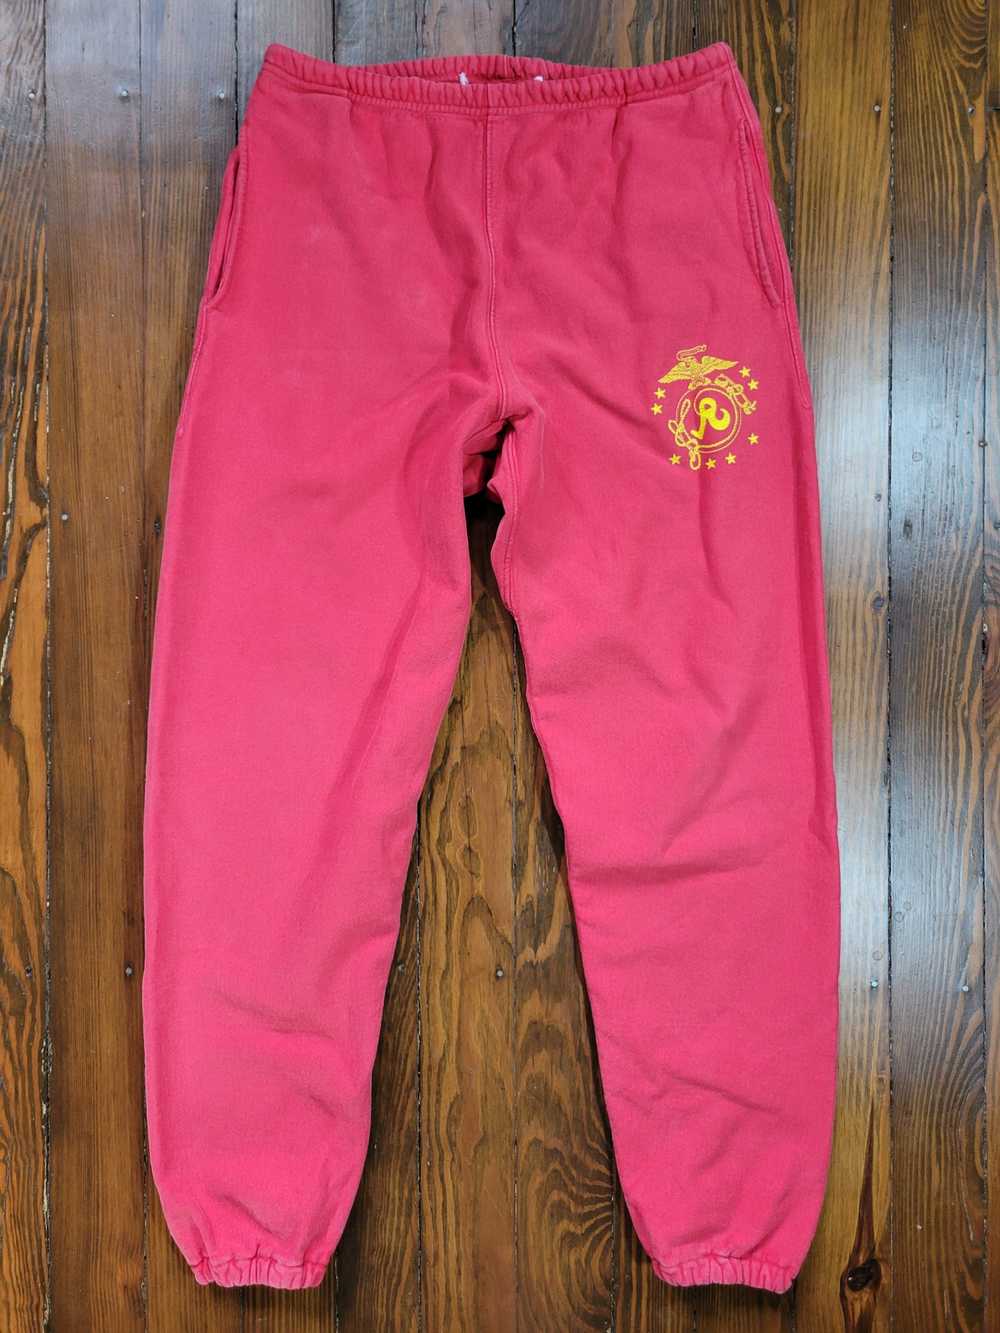 Richardson Richardson Sweatpants - Red - Size XL - image 1